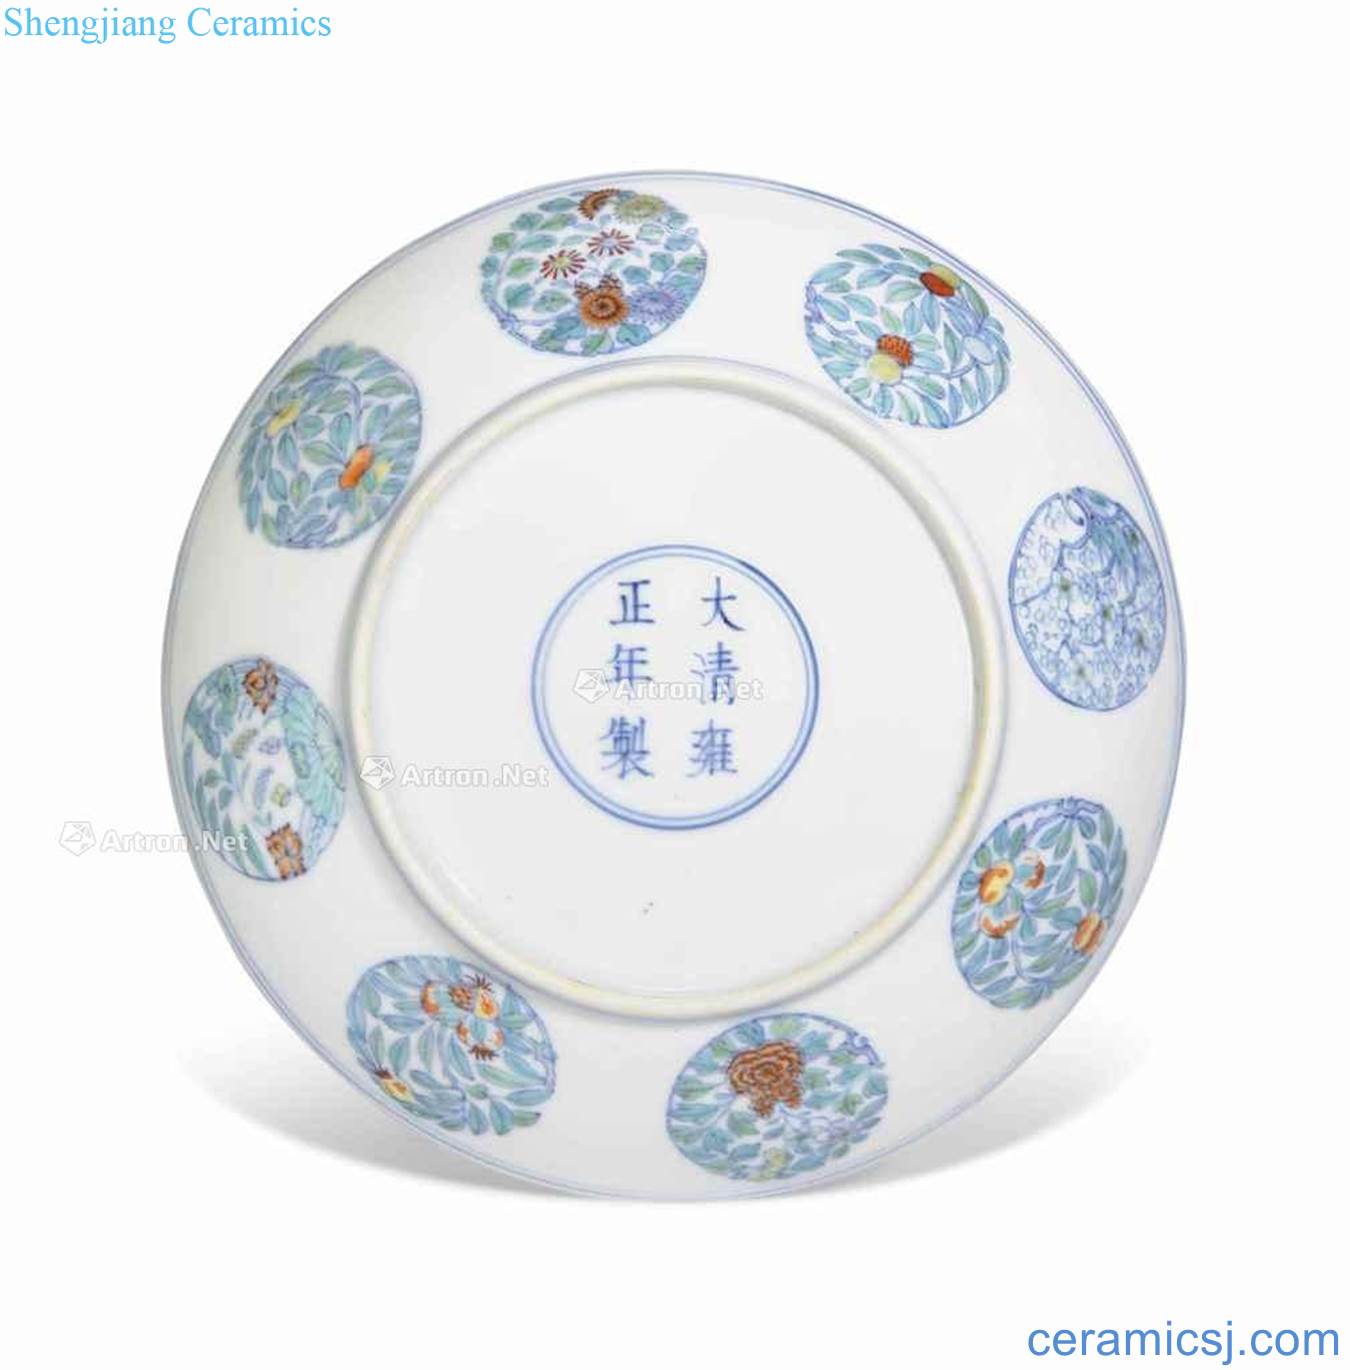 Qing yongzheng dou CaiTuan pattern plate